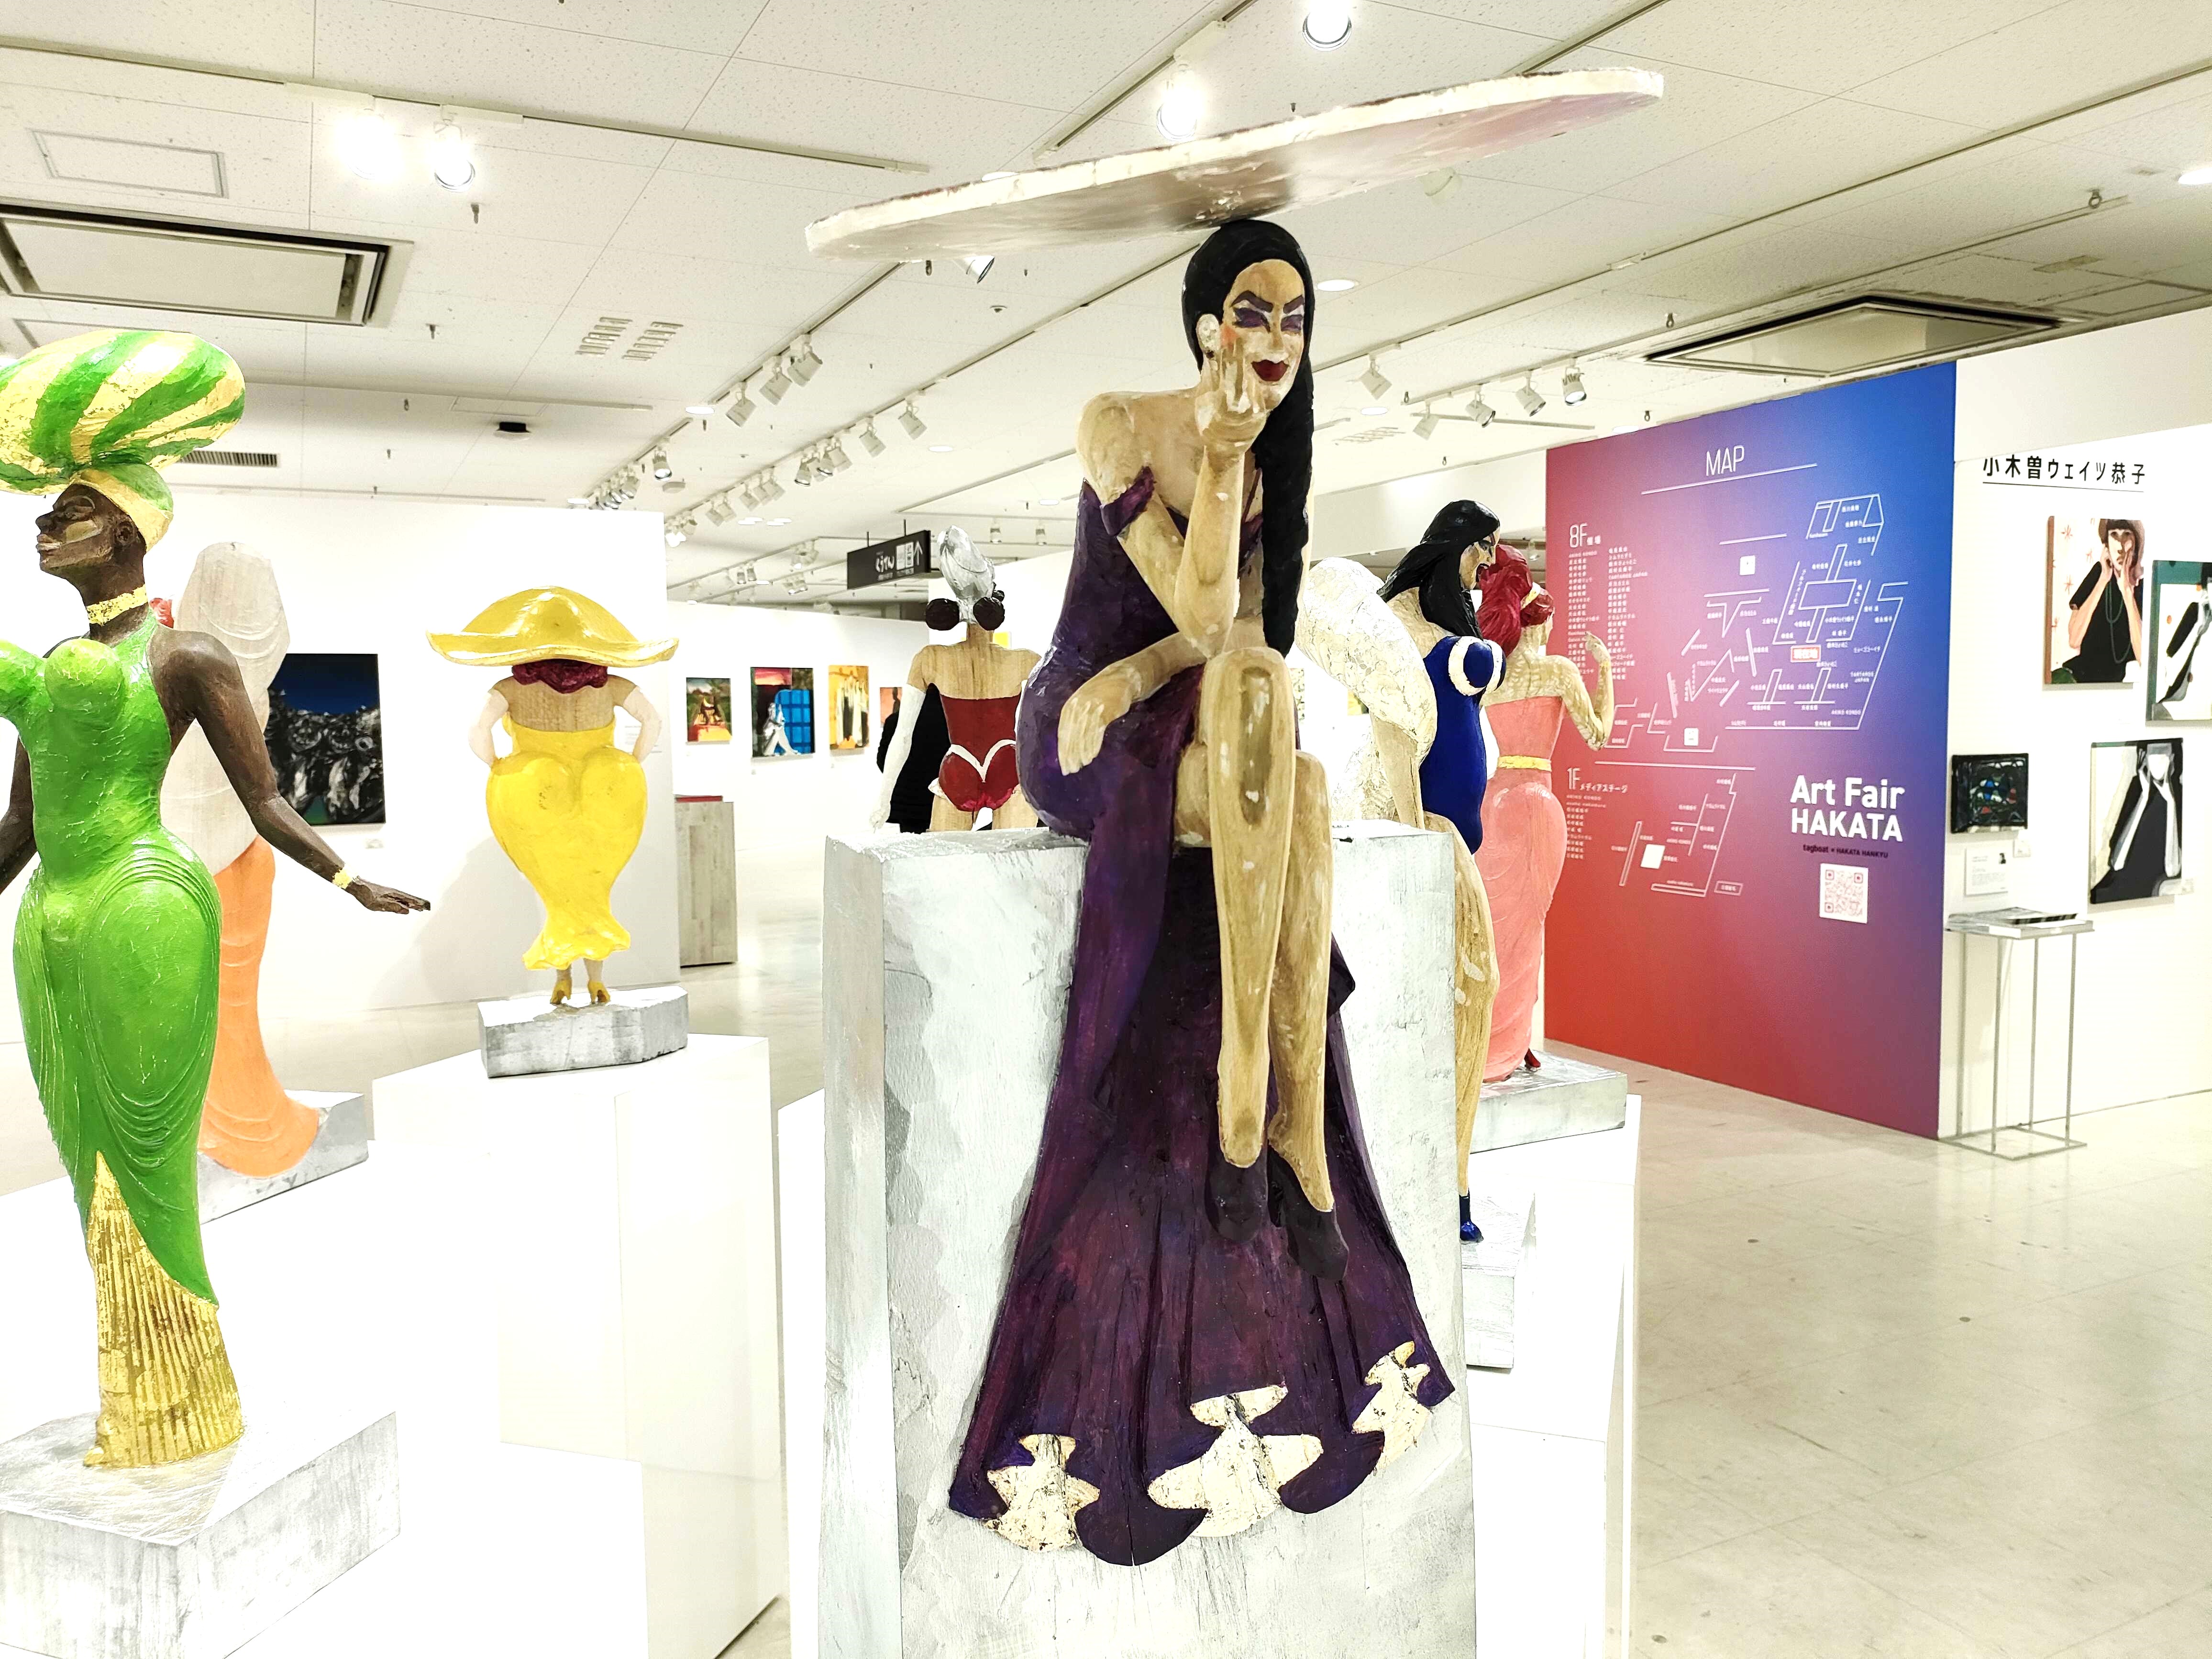 2022年「Art Fair HAKATA」にて8体揃って展示された珍宝虹色女王像